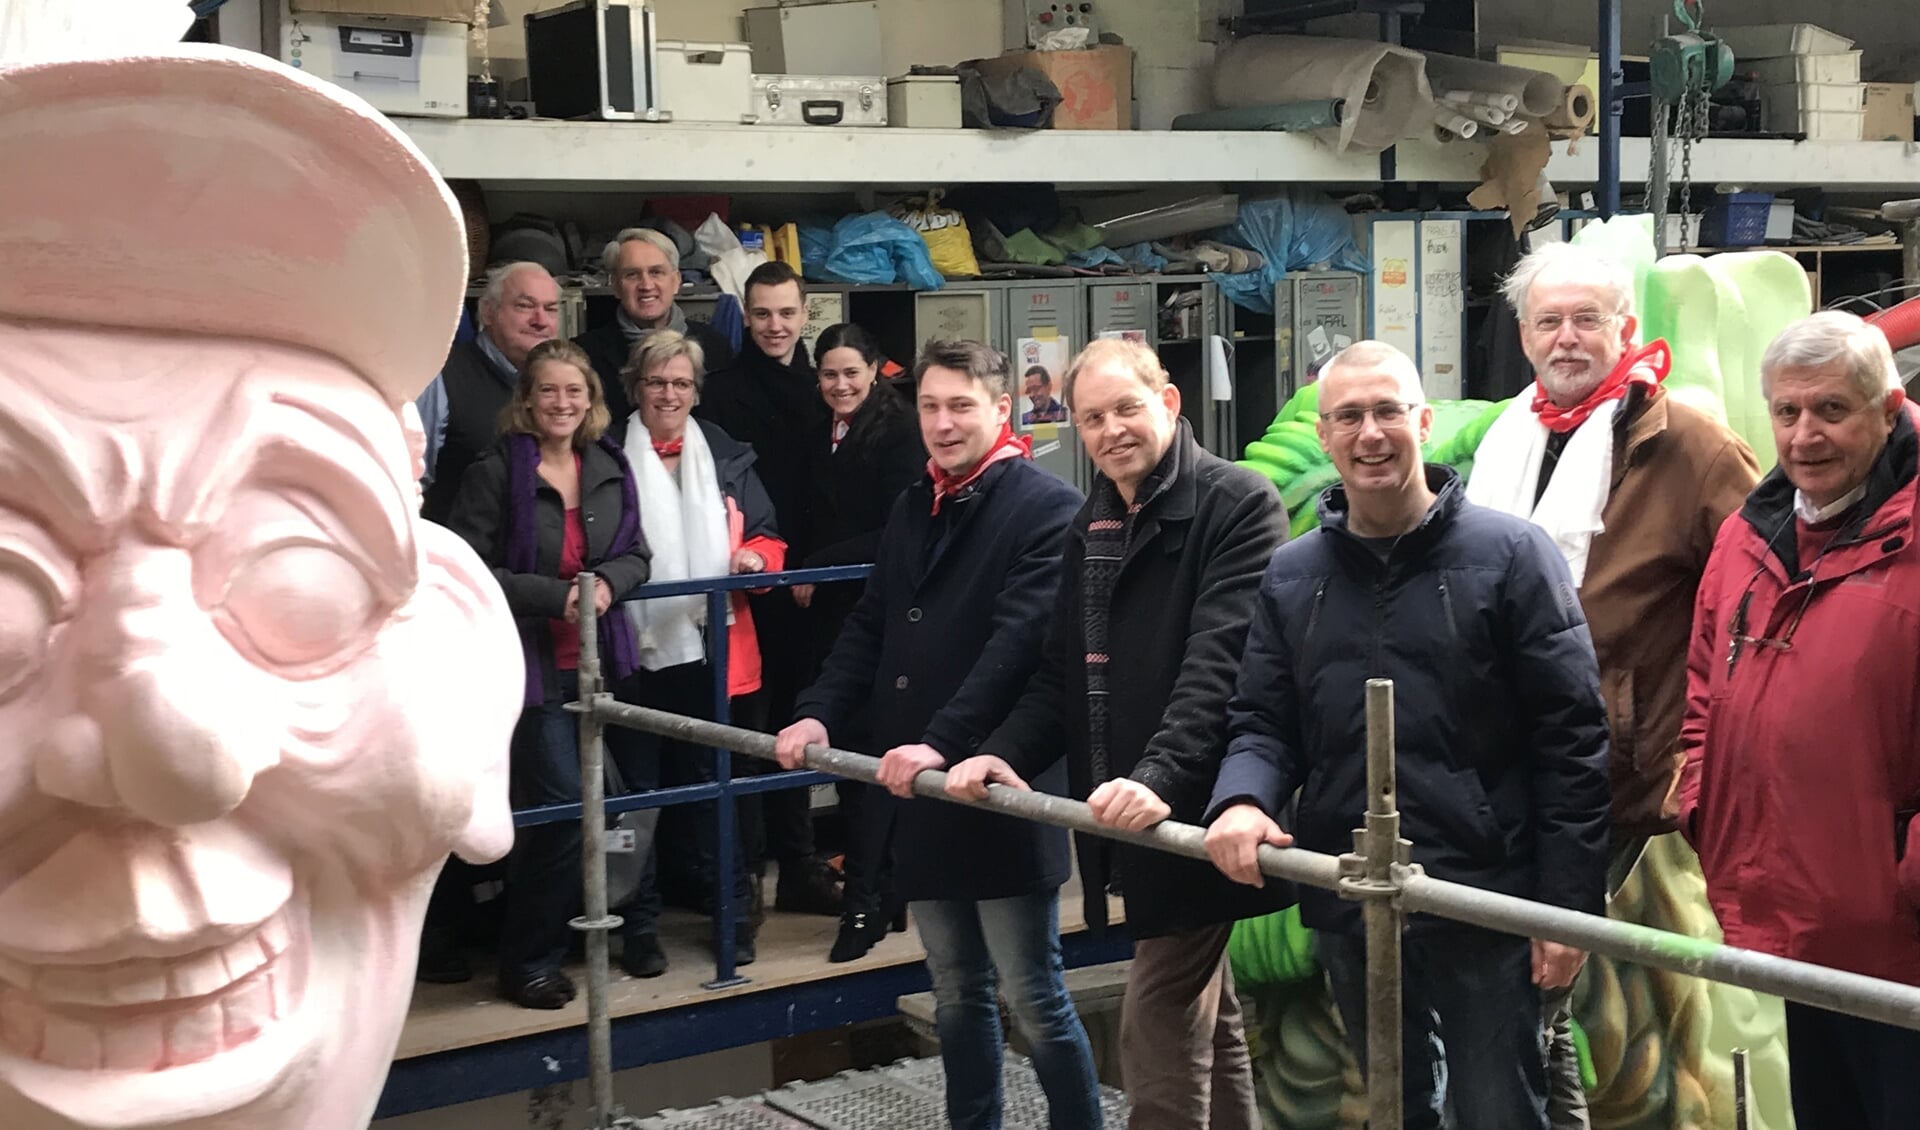 De West-Brabantse leden van de VVD-fractie van Provinciale Staten, de VVD-fractie van waterschap Brabantse Delta en lokale fracties bezochten de bouwloods van “Wij”. FOTO BOUWCLUB 'WIJ'